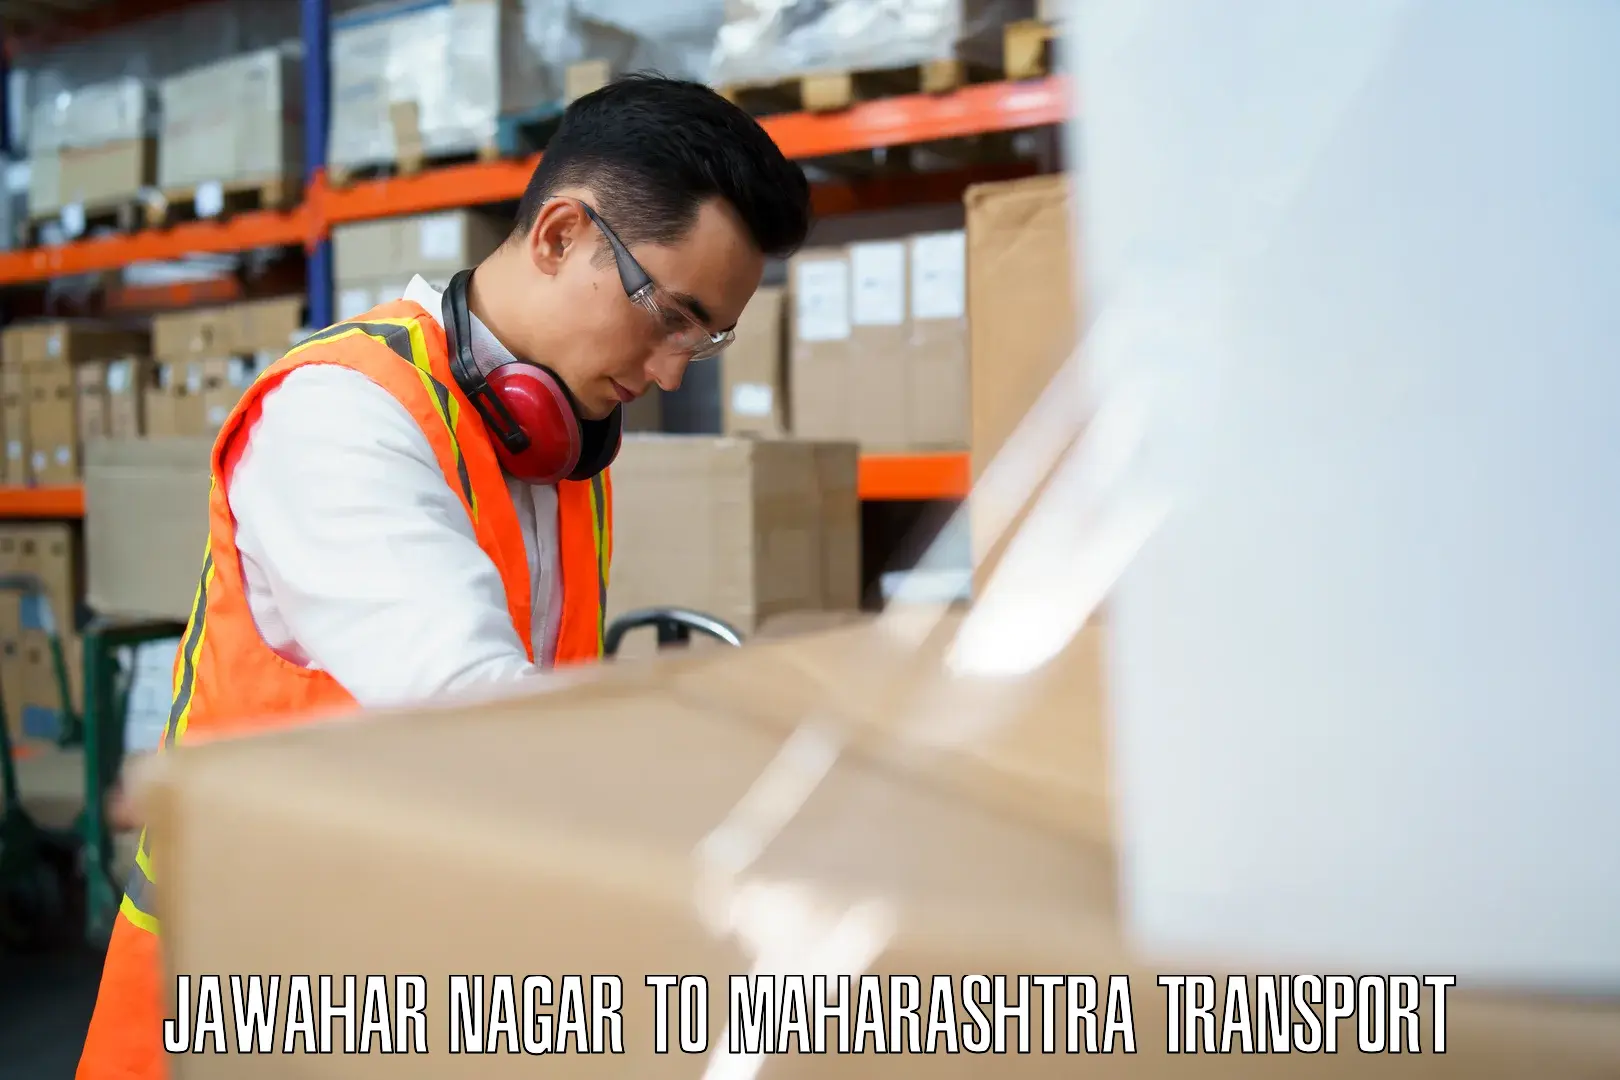 Shipping partner Jawahar Nagar to Osmanabad